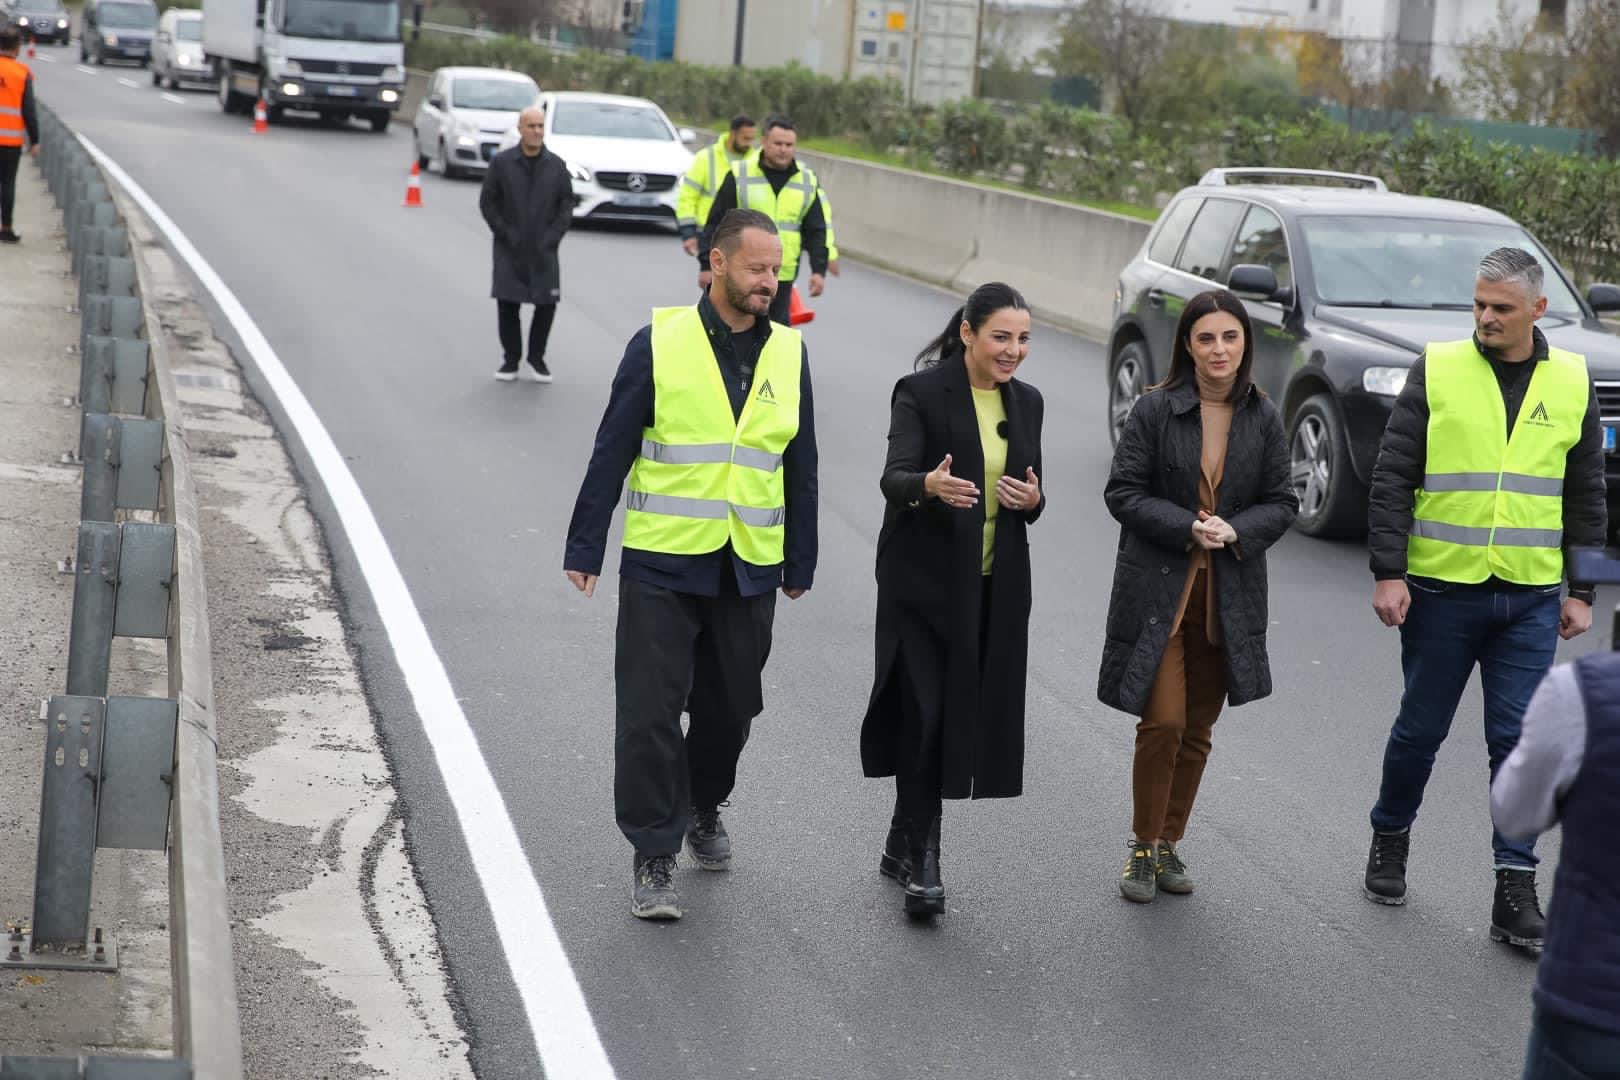 Përfundon asfaltimi i autostradës nyja e Shkozeti – mbikalimi i Plepave (VIDEO)